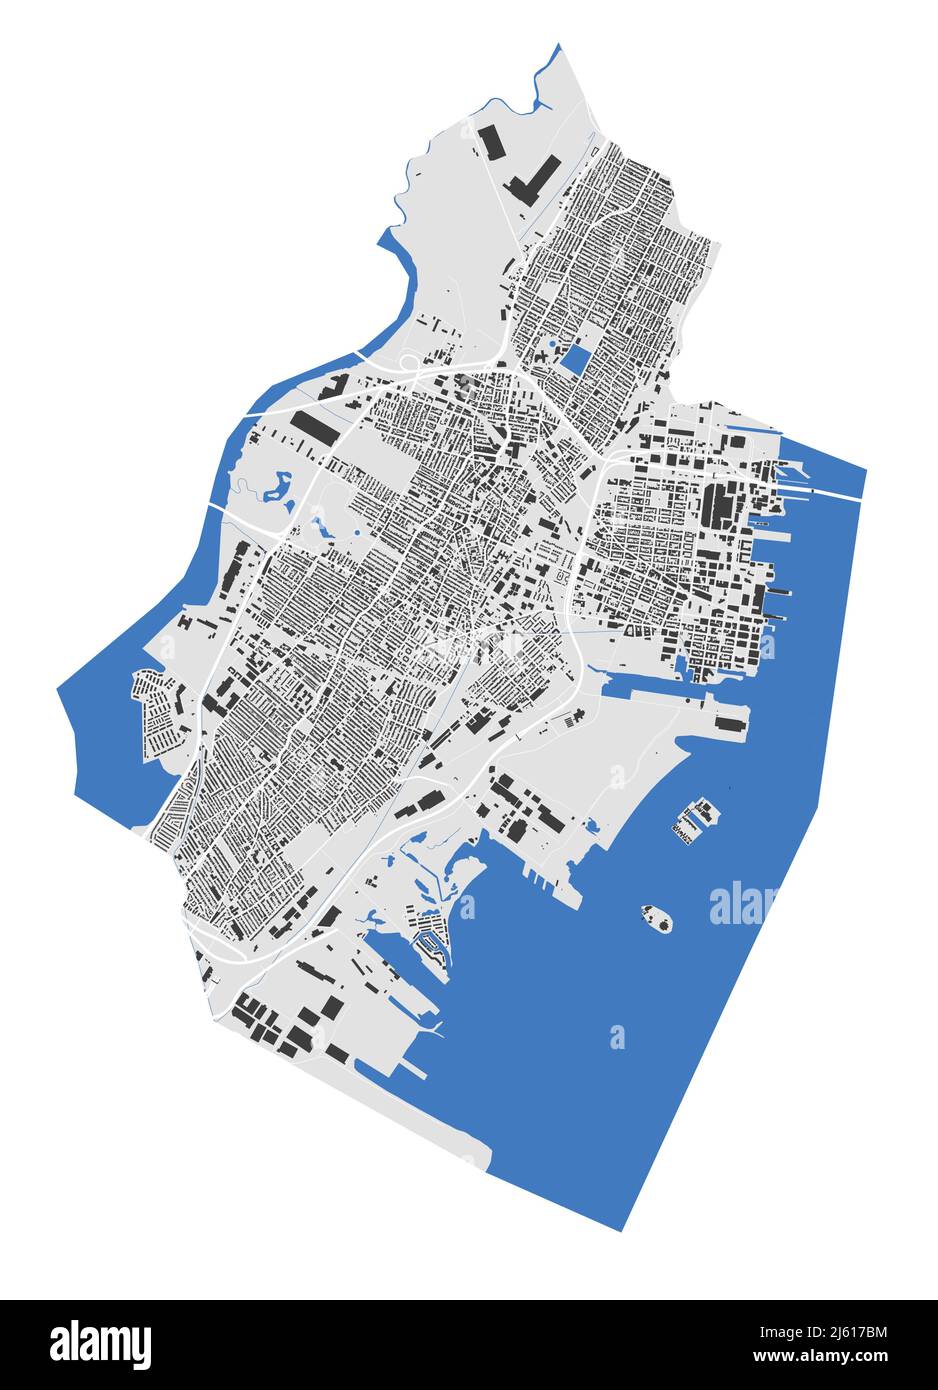 Carte de Jersey. Carte détaillée du quartier administratif de Jersey. Panorama urbain. Illustration vectorielle libre de droits. Carte avec les bâtiments, l'eau, Illustration de Vecteur